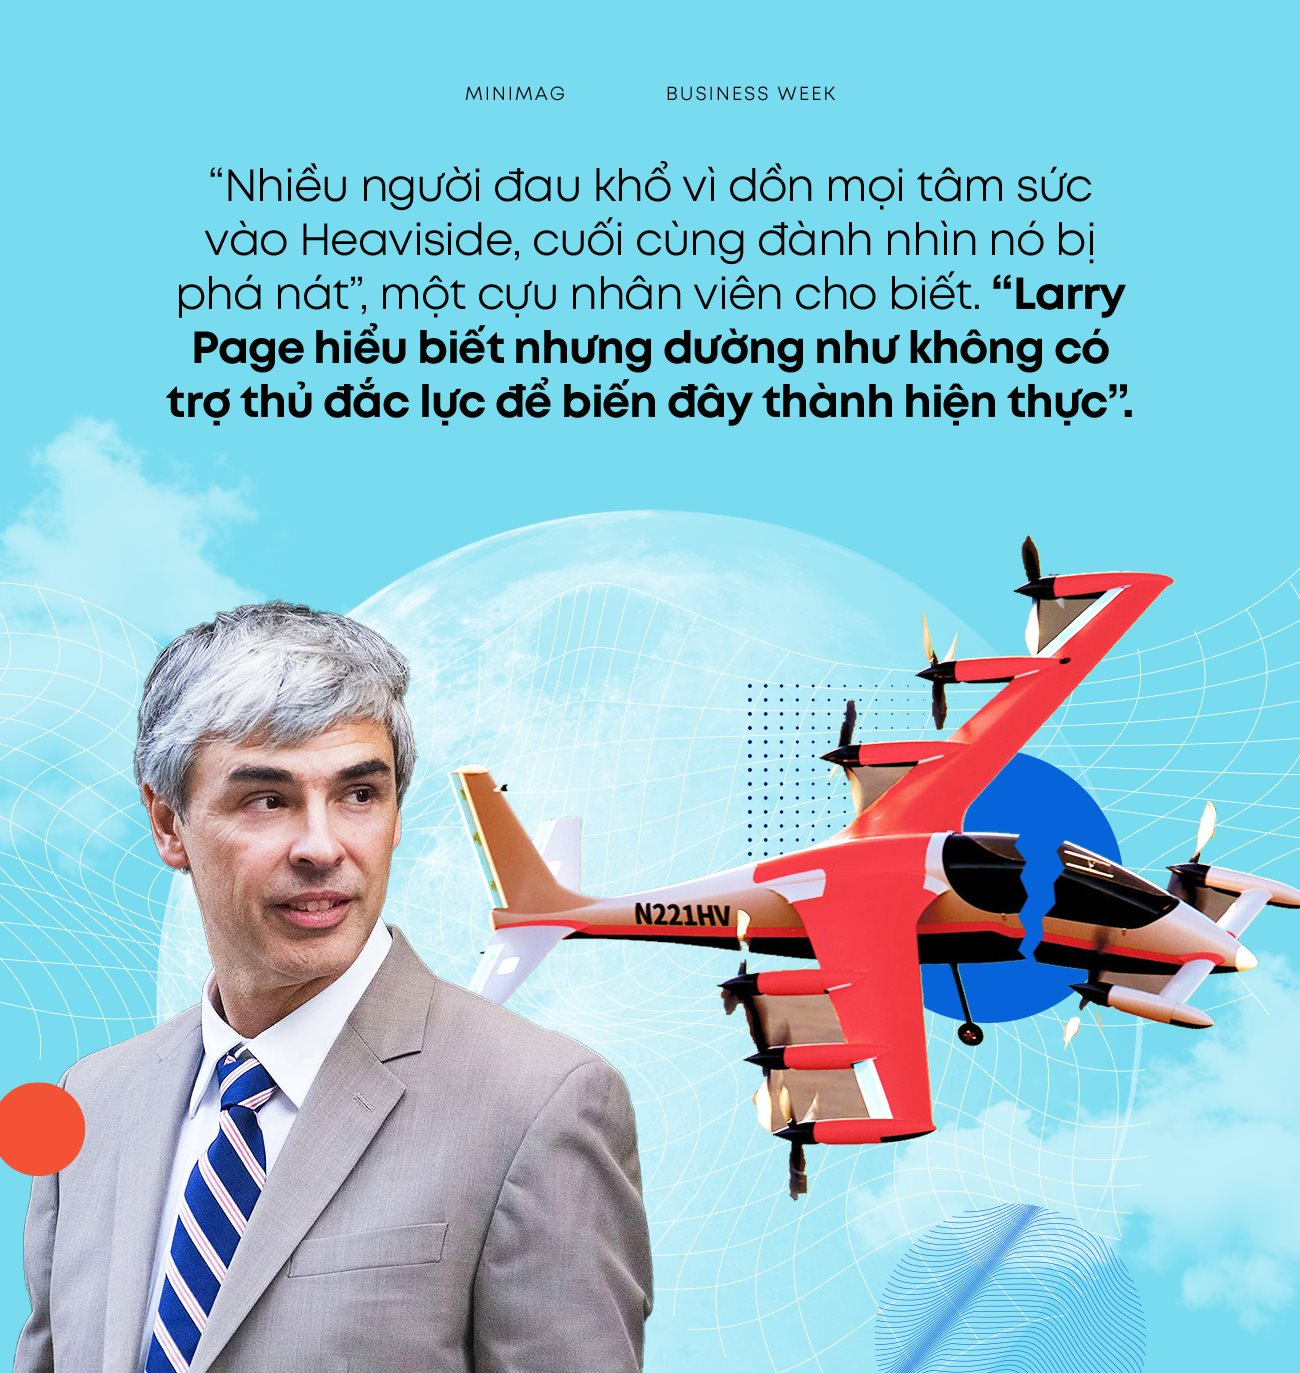 Larry Page lập nên công ty nghìn tỷ USD nhưng thất bại với 1 startup: Ô tô bay 5 năm không làm nên chuyện, nhà sáng lập như 'sao chổi', hành tung bí ẩn - Ảnh 8.